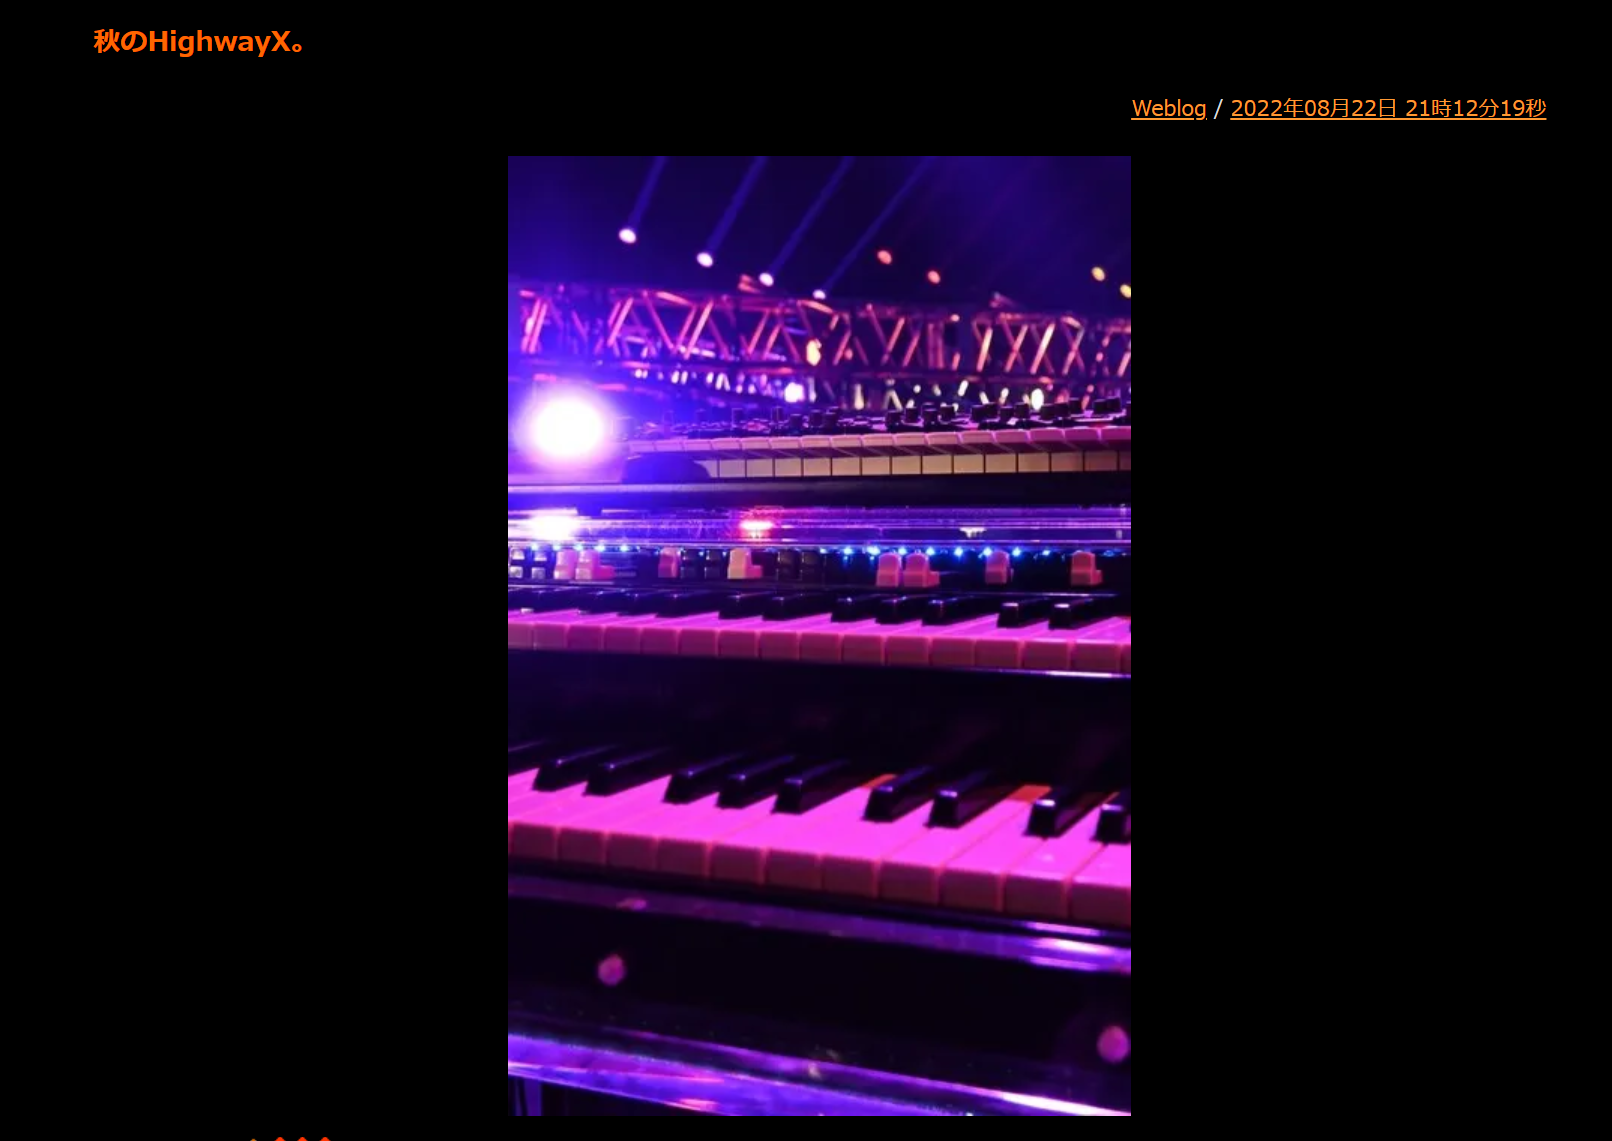 川村ケンがB'z『Highway X』ツアー振替公演の決定についてコメントしたブログ記事のキャプチャ画像